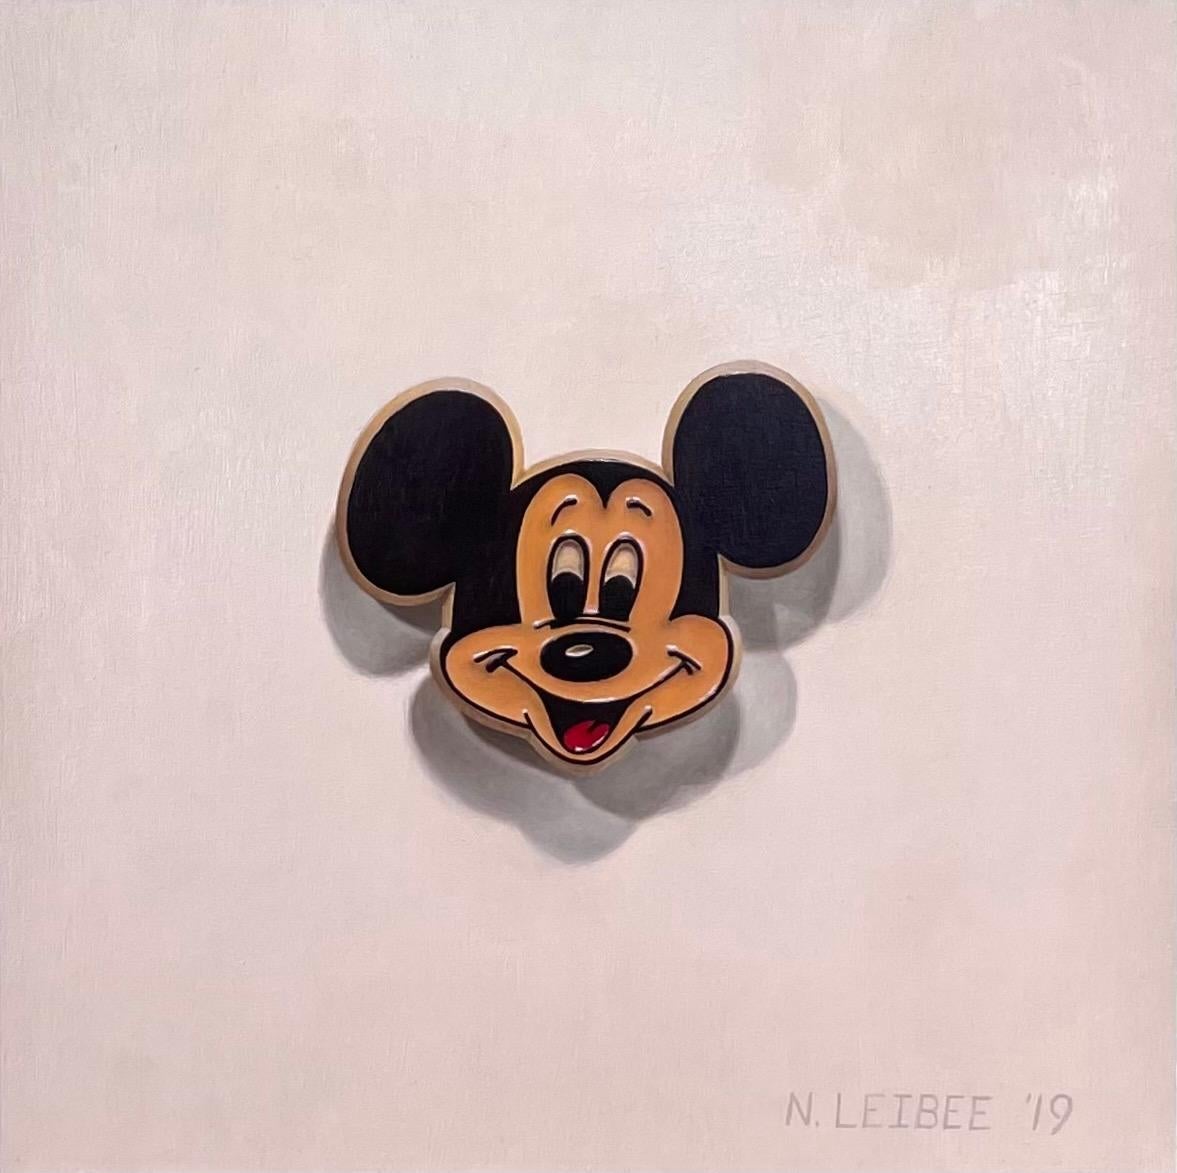 Nick Leibee Animal Painting - "Mickey Pin" Oil painting